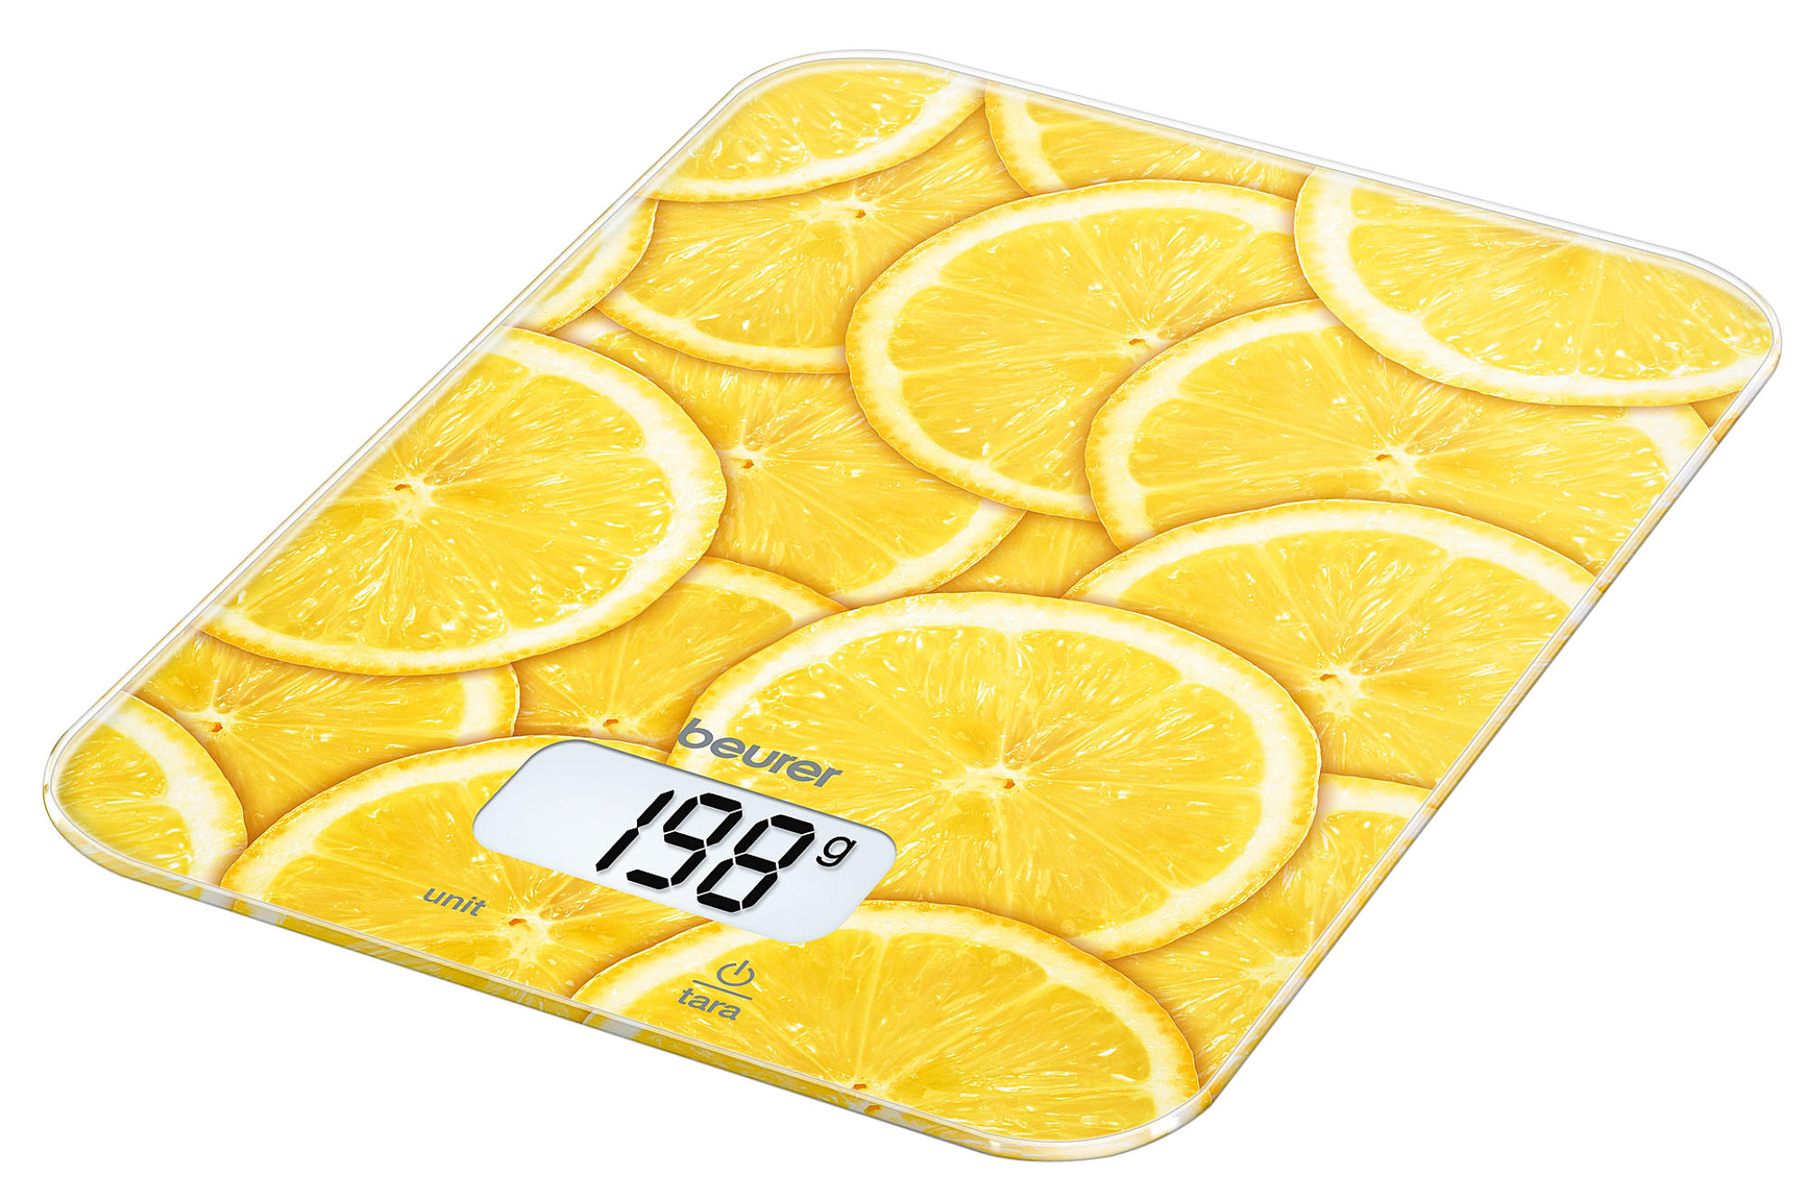 De Cocina Beurer ks19limon balanza ks19 lemon 19 digital para con pesaje tara funcionamiento bot 5kg escala 1g display amarillo capacidad 5 1